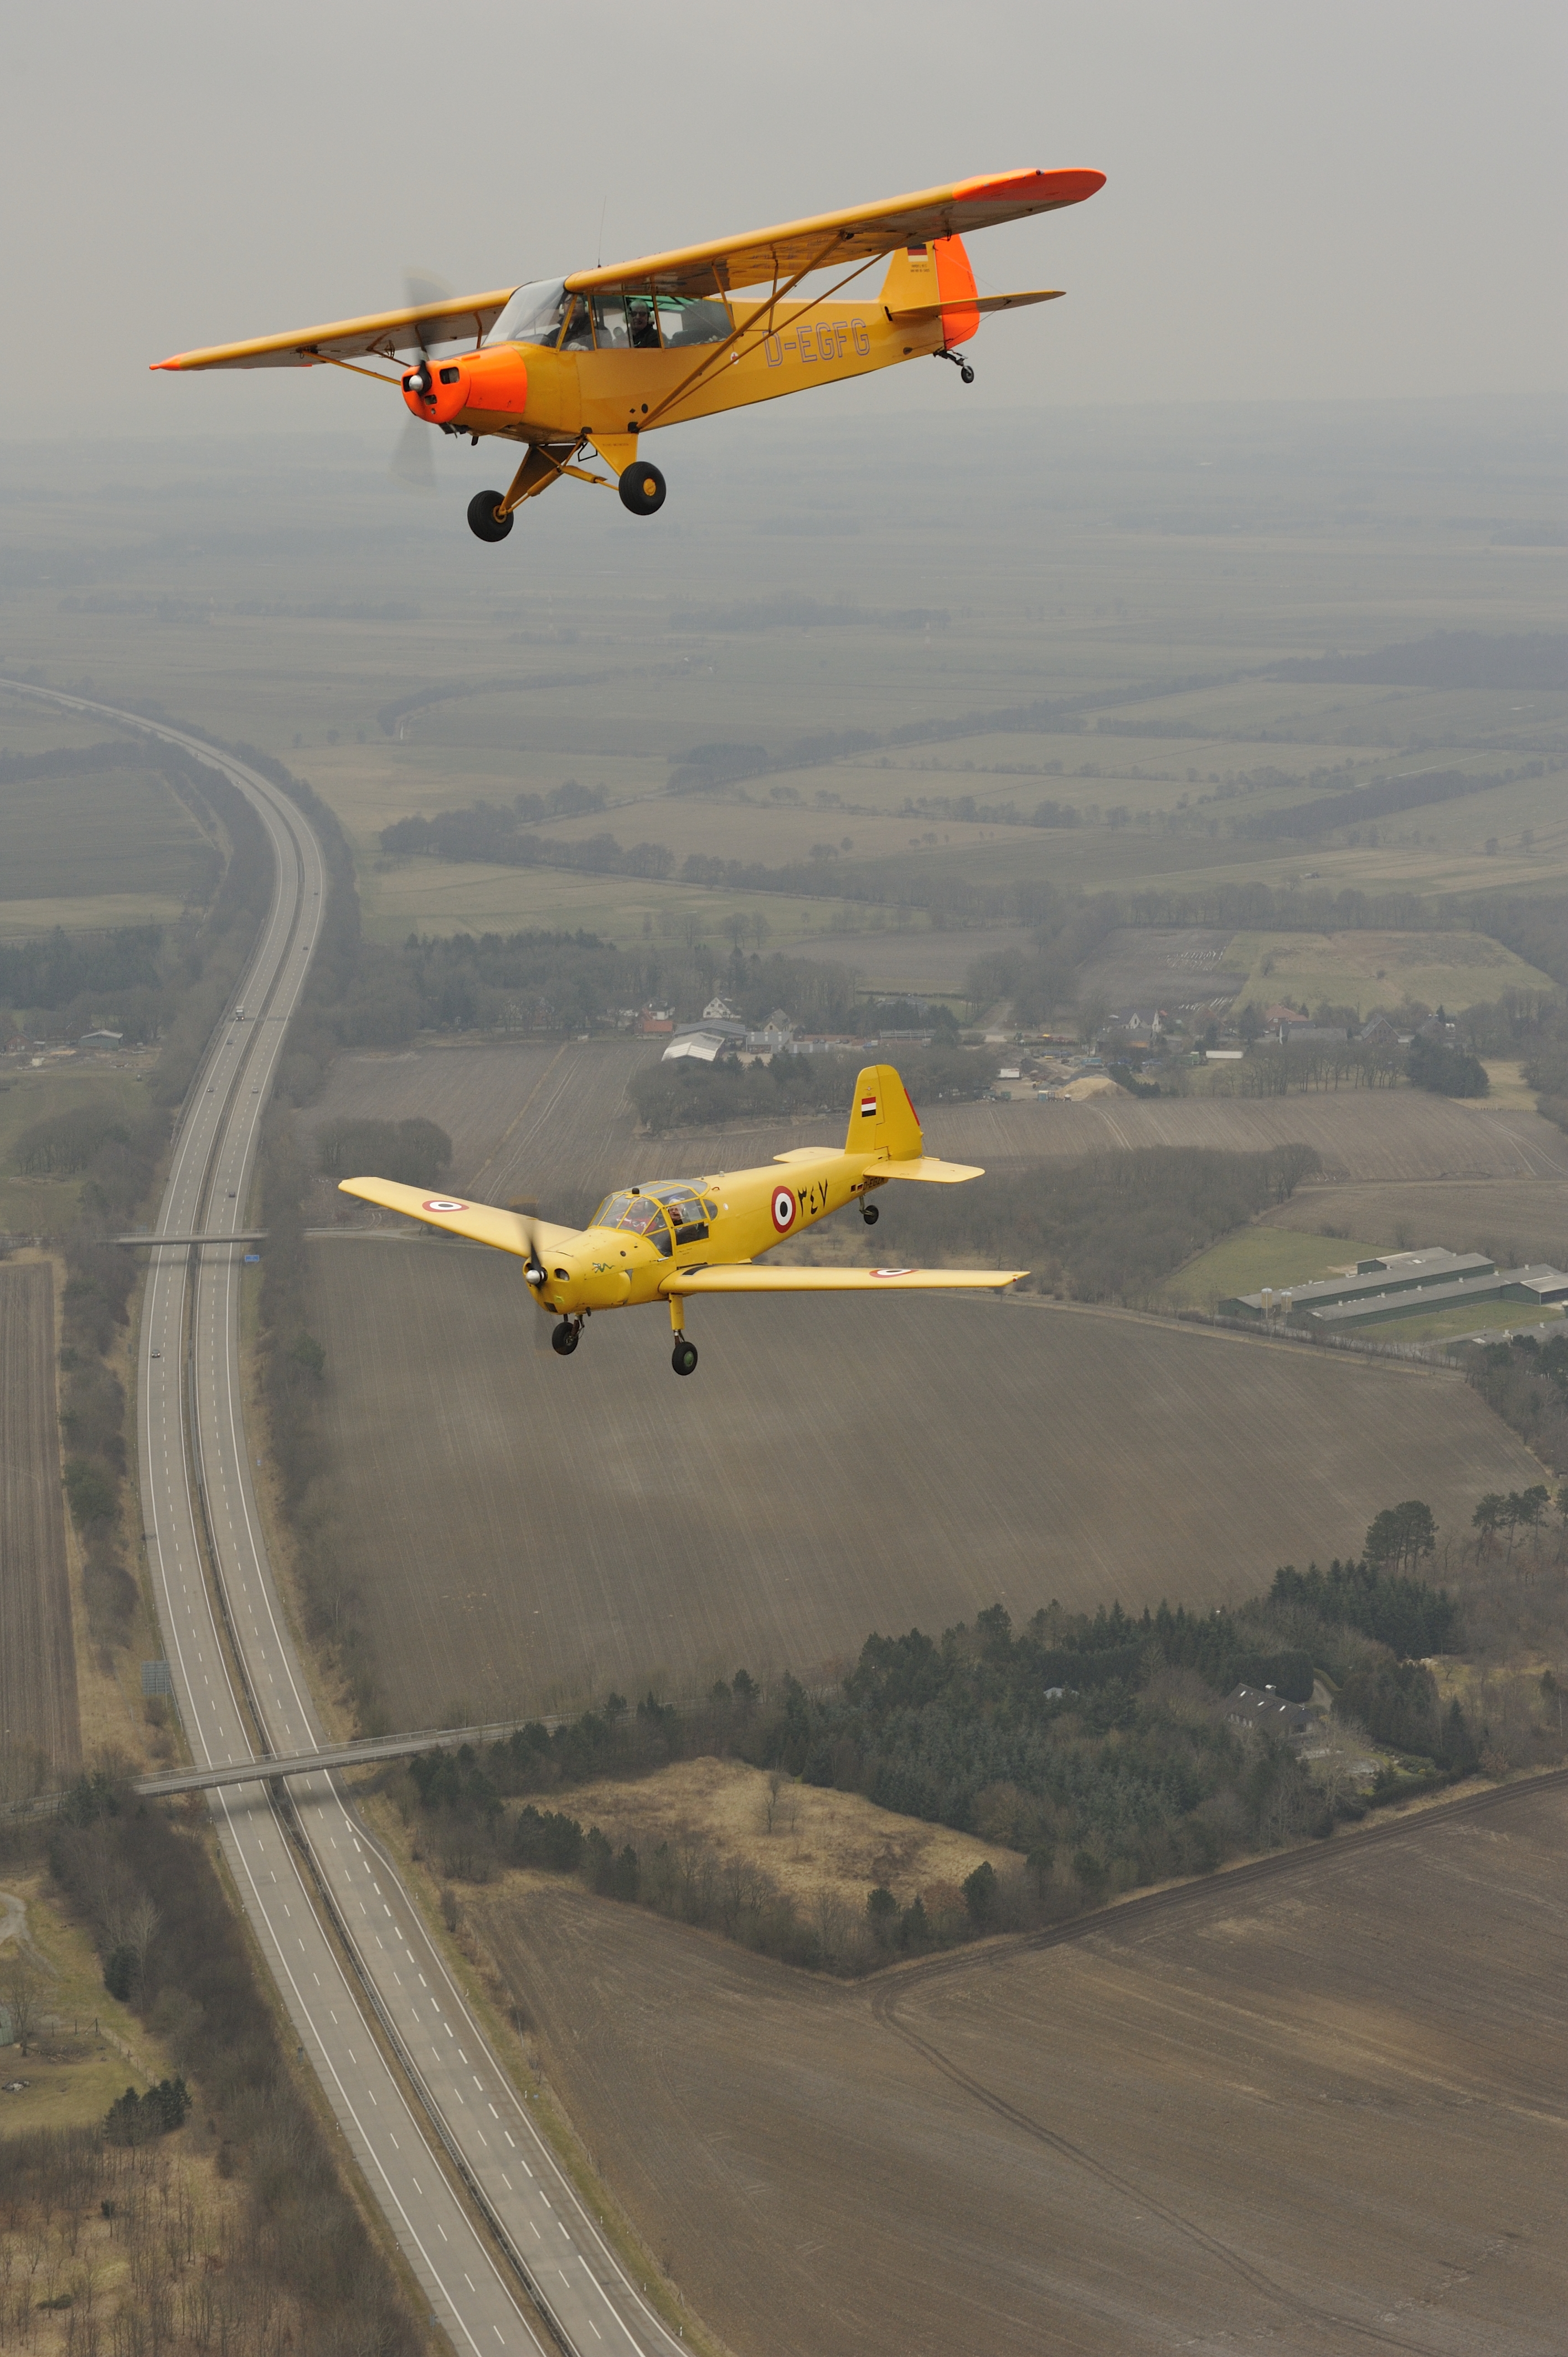 Fotoflugkurs Cuxhaven DS76956 - Formationsflug über der Autobahn